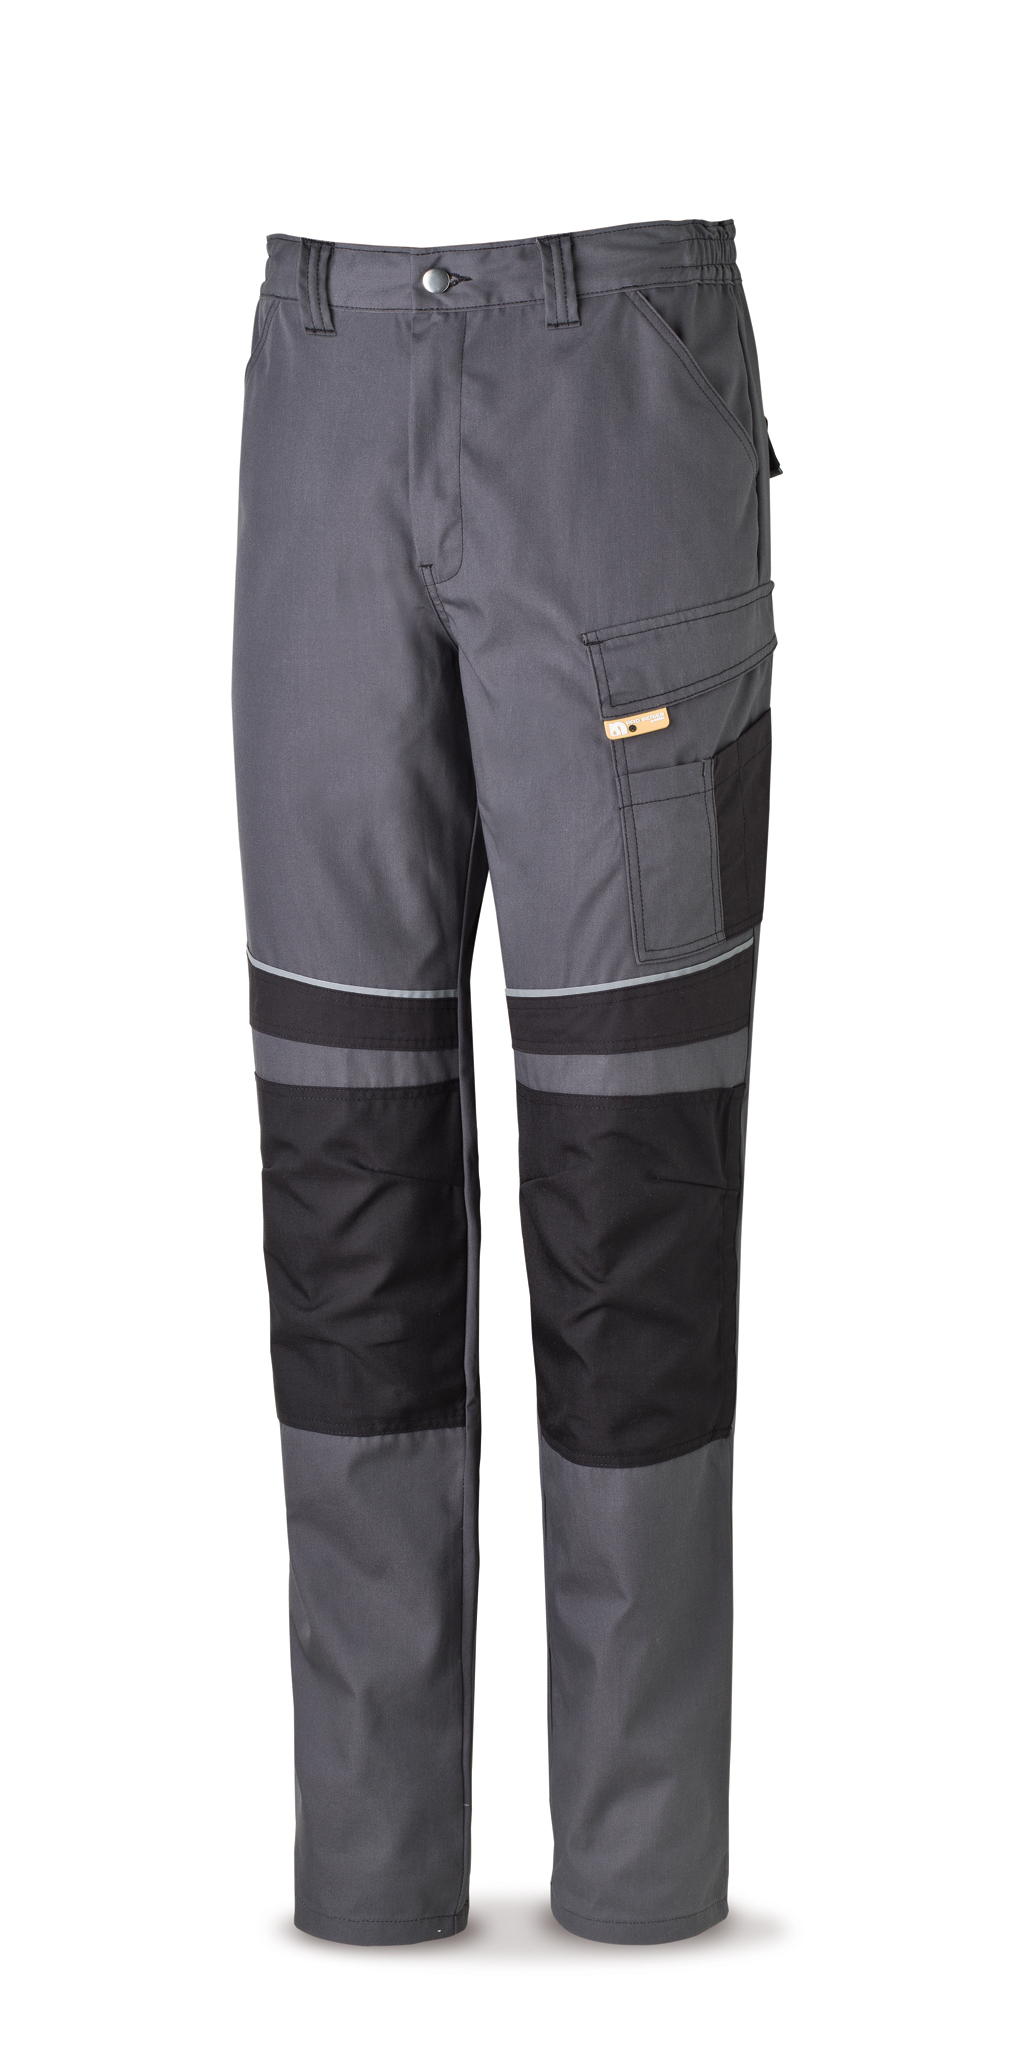 588-PNEG Vetements de travail laboral Pro Series Pantalon toile tergal 245 g. Coloris gris/noir.